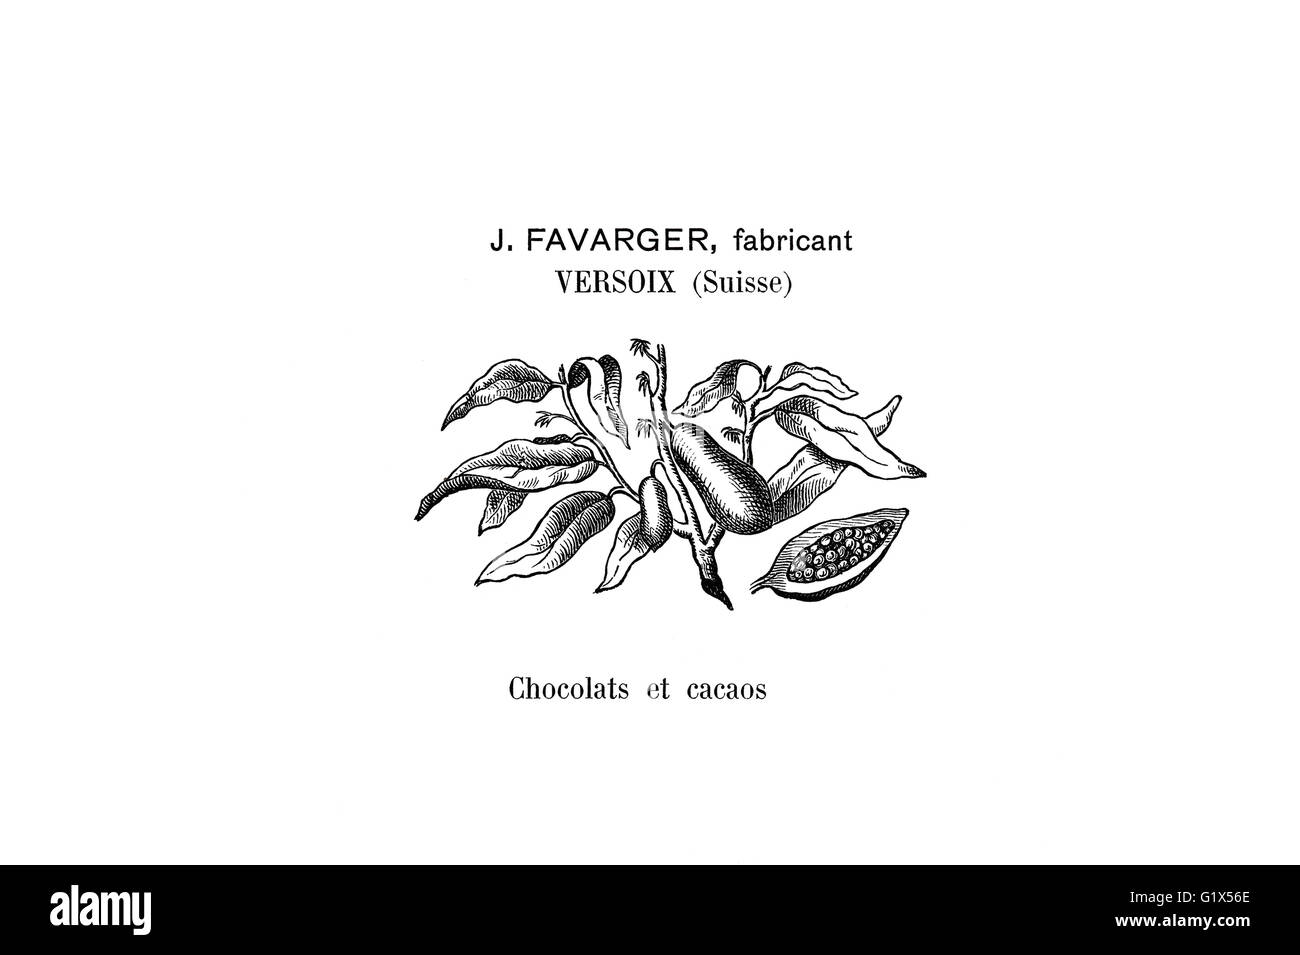 Historische Marke der Schweizer Schokoladenhersteller Favrager von 1901 Stockfoto